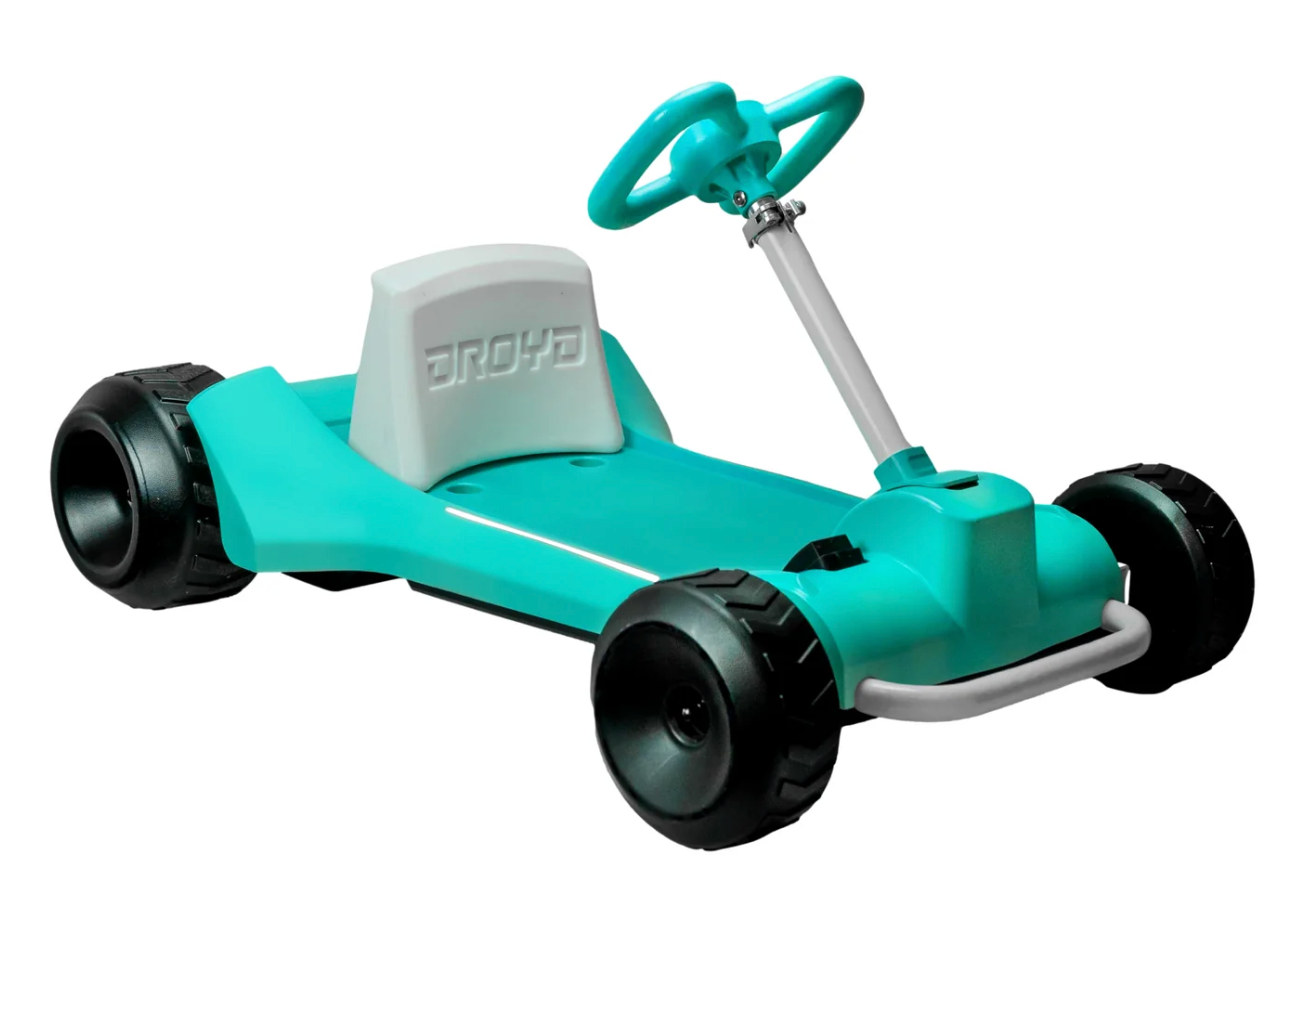 Droyd Zypster Kids Electric Go Kart